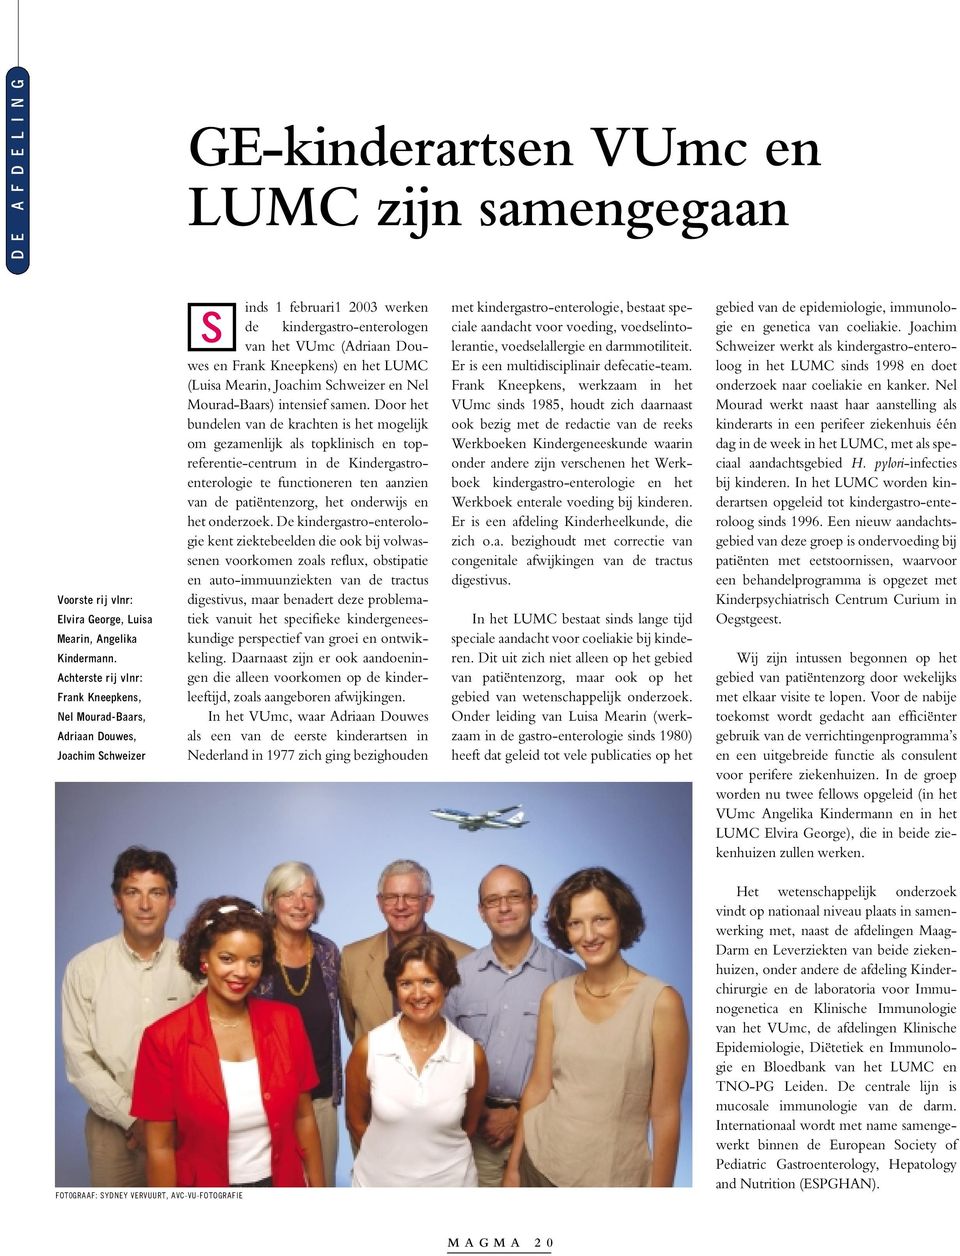 het LUMC (Luisa Mearin, Joachim Schweizer en Nel Mourad-Baars) intensief samen.